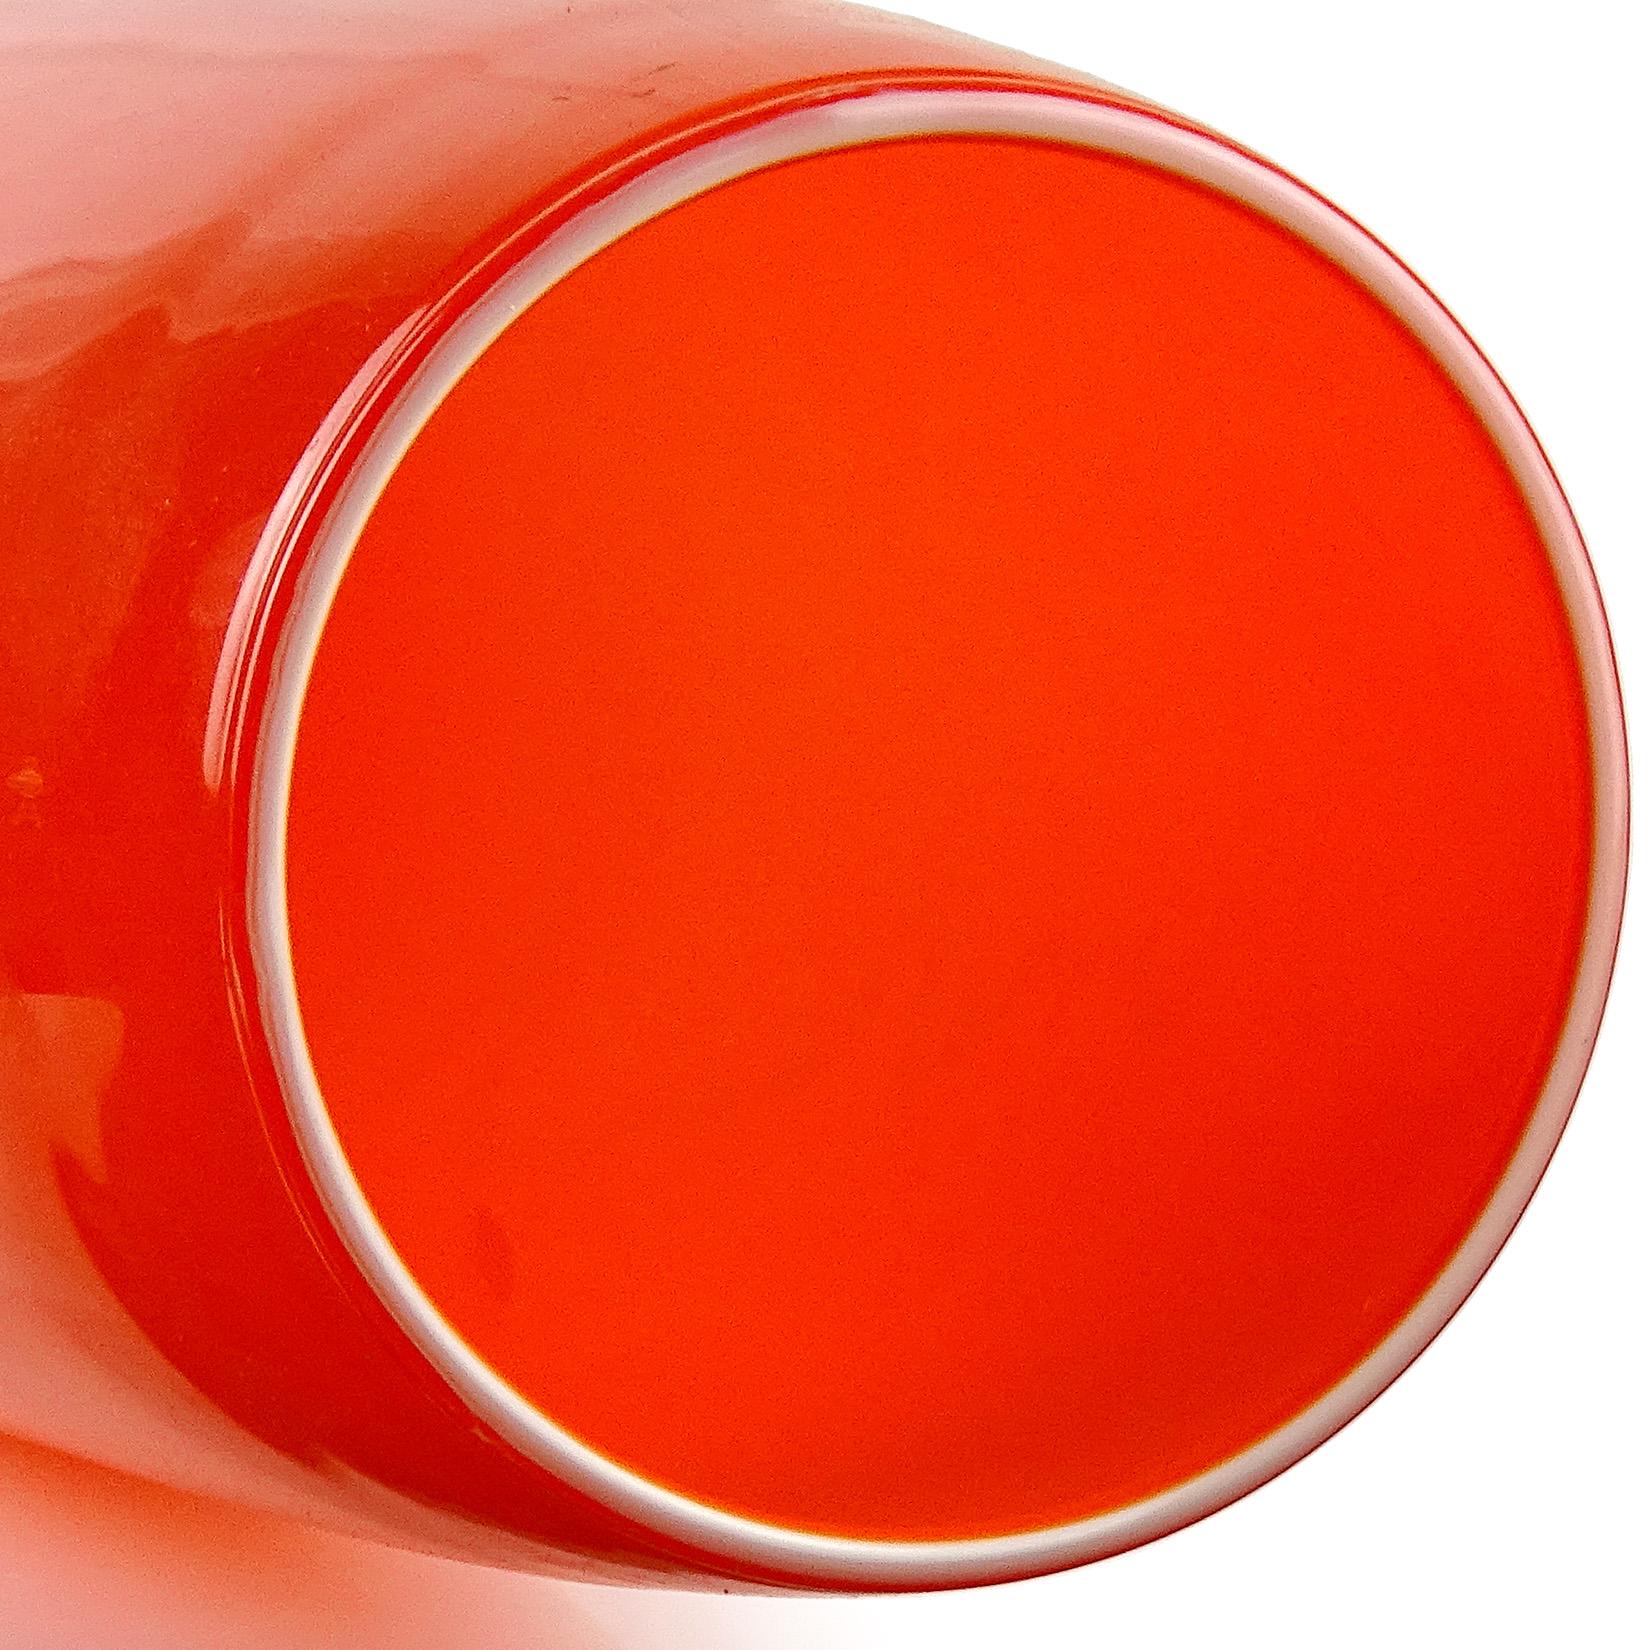 Grand vase ou porte-parapluie vintage, soufflé à la main, en verre d'art italien orange vif. Attribué à la société Empoli, vers les années 1960-1970. La pièce mesure 18 3/4